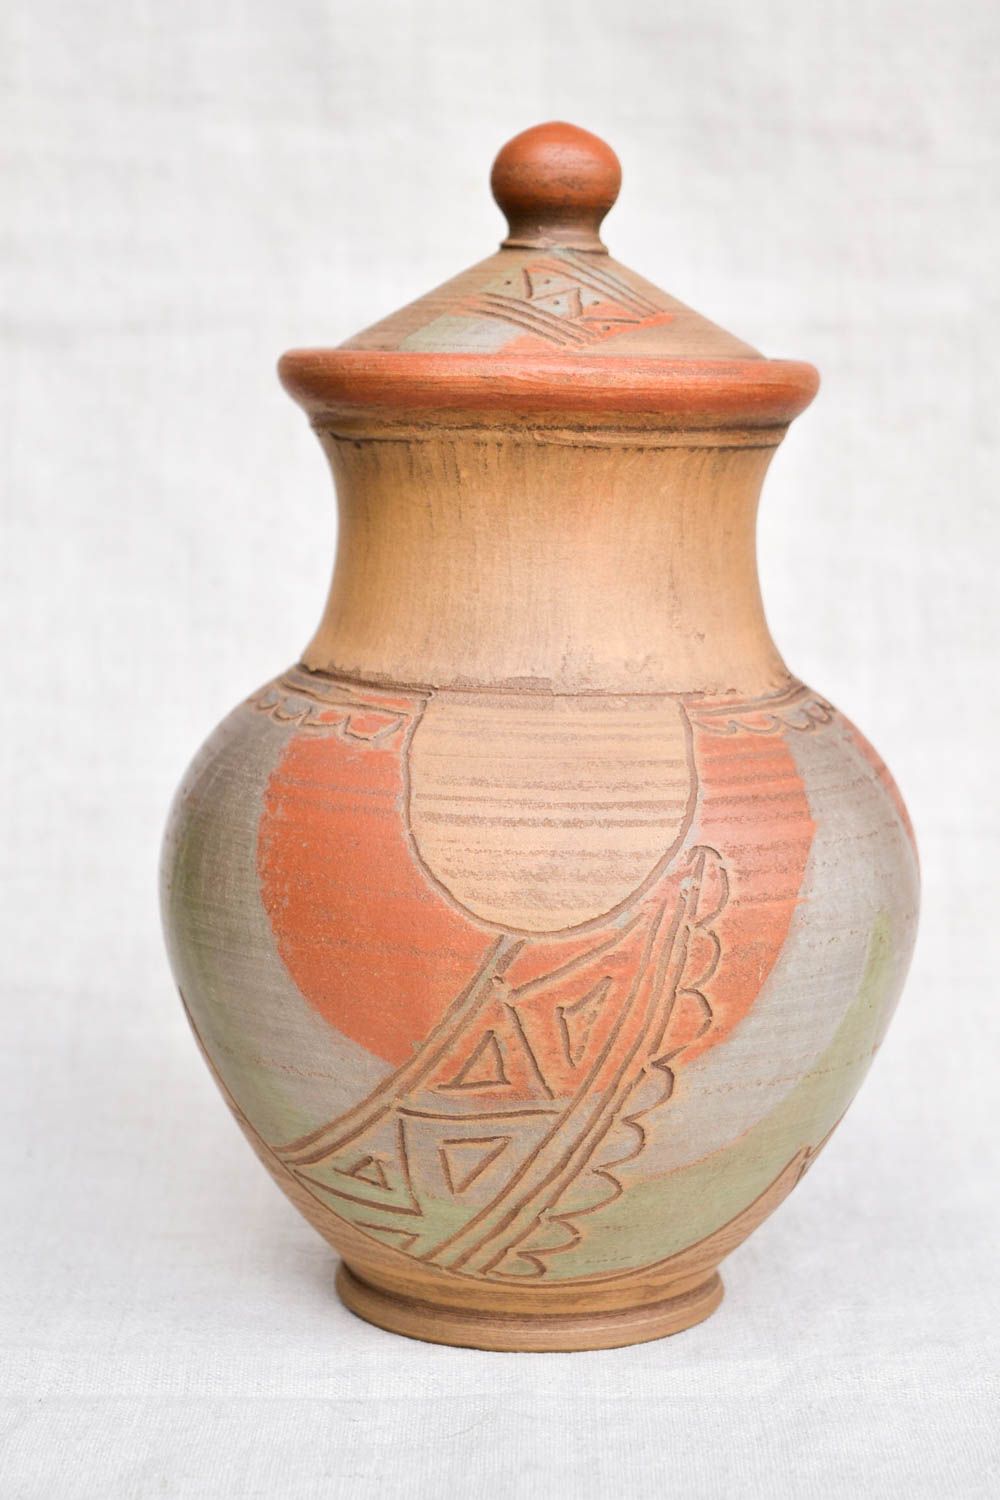 60 oz handmade ceramic milk pitcher in ethnic design 1,65 lb photo 4